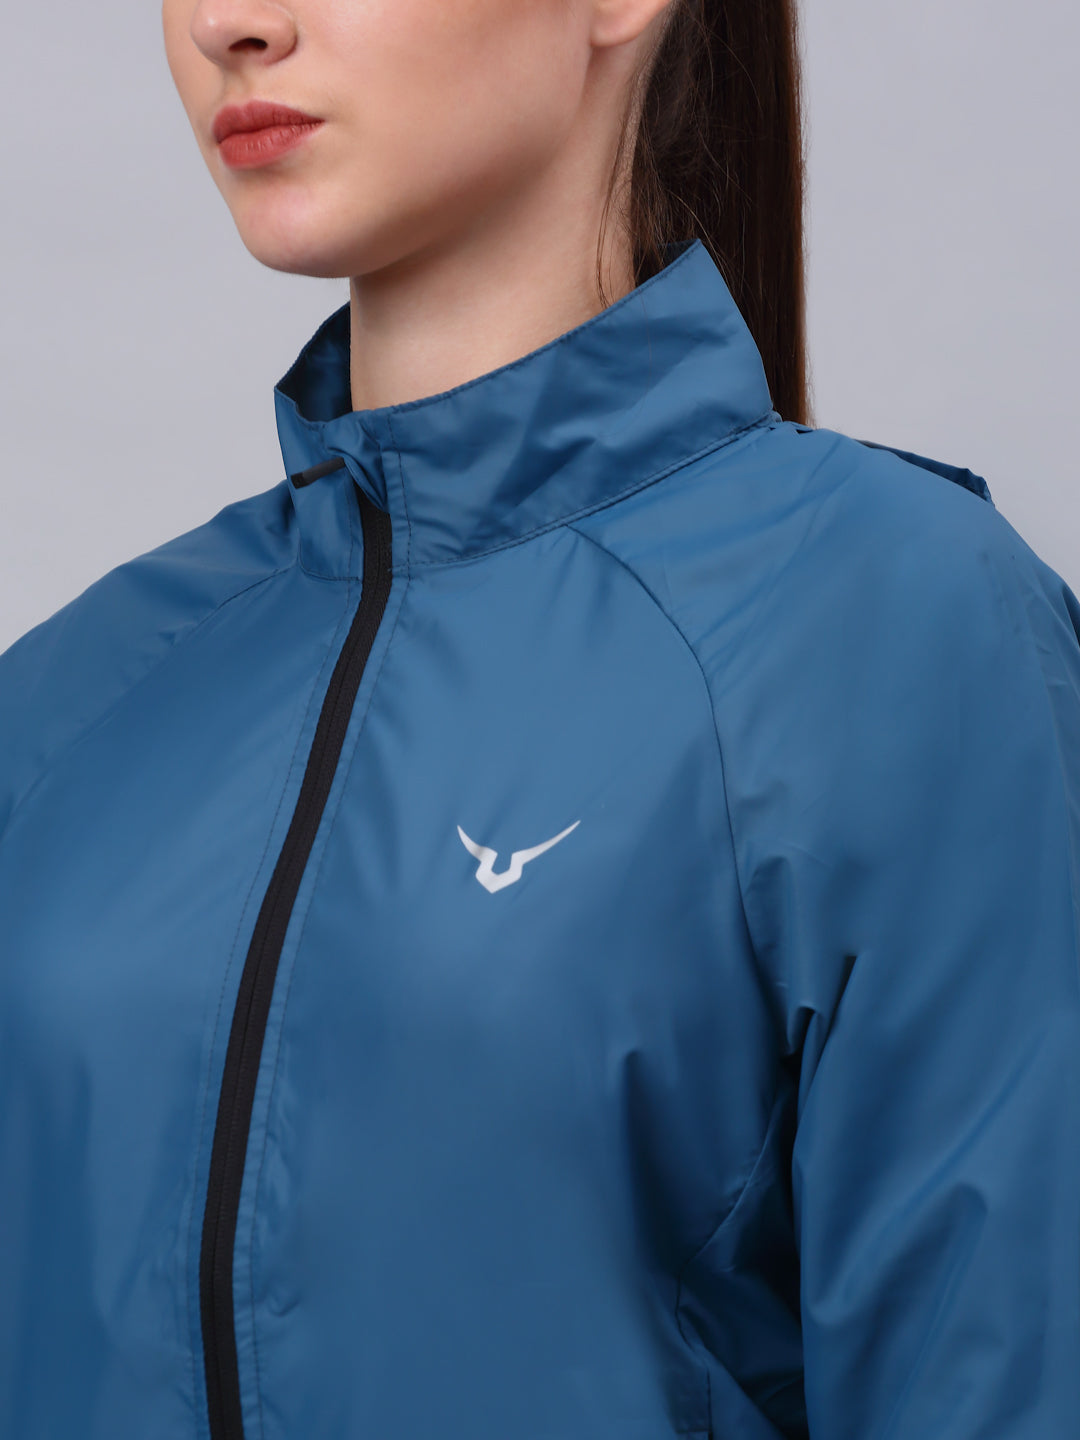 Invincible Women's Wind Runner Outdoor Jacket